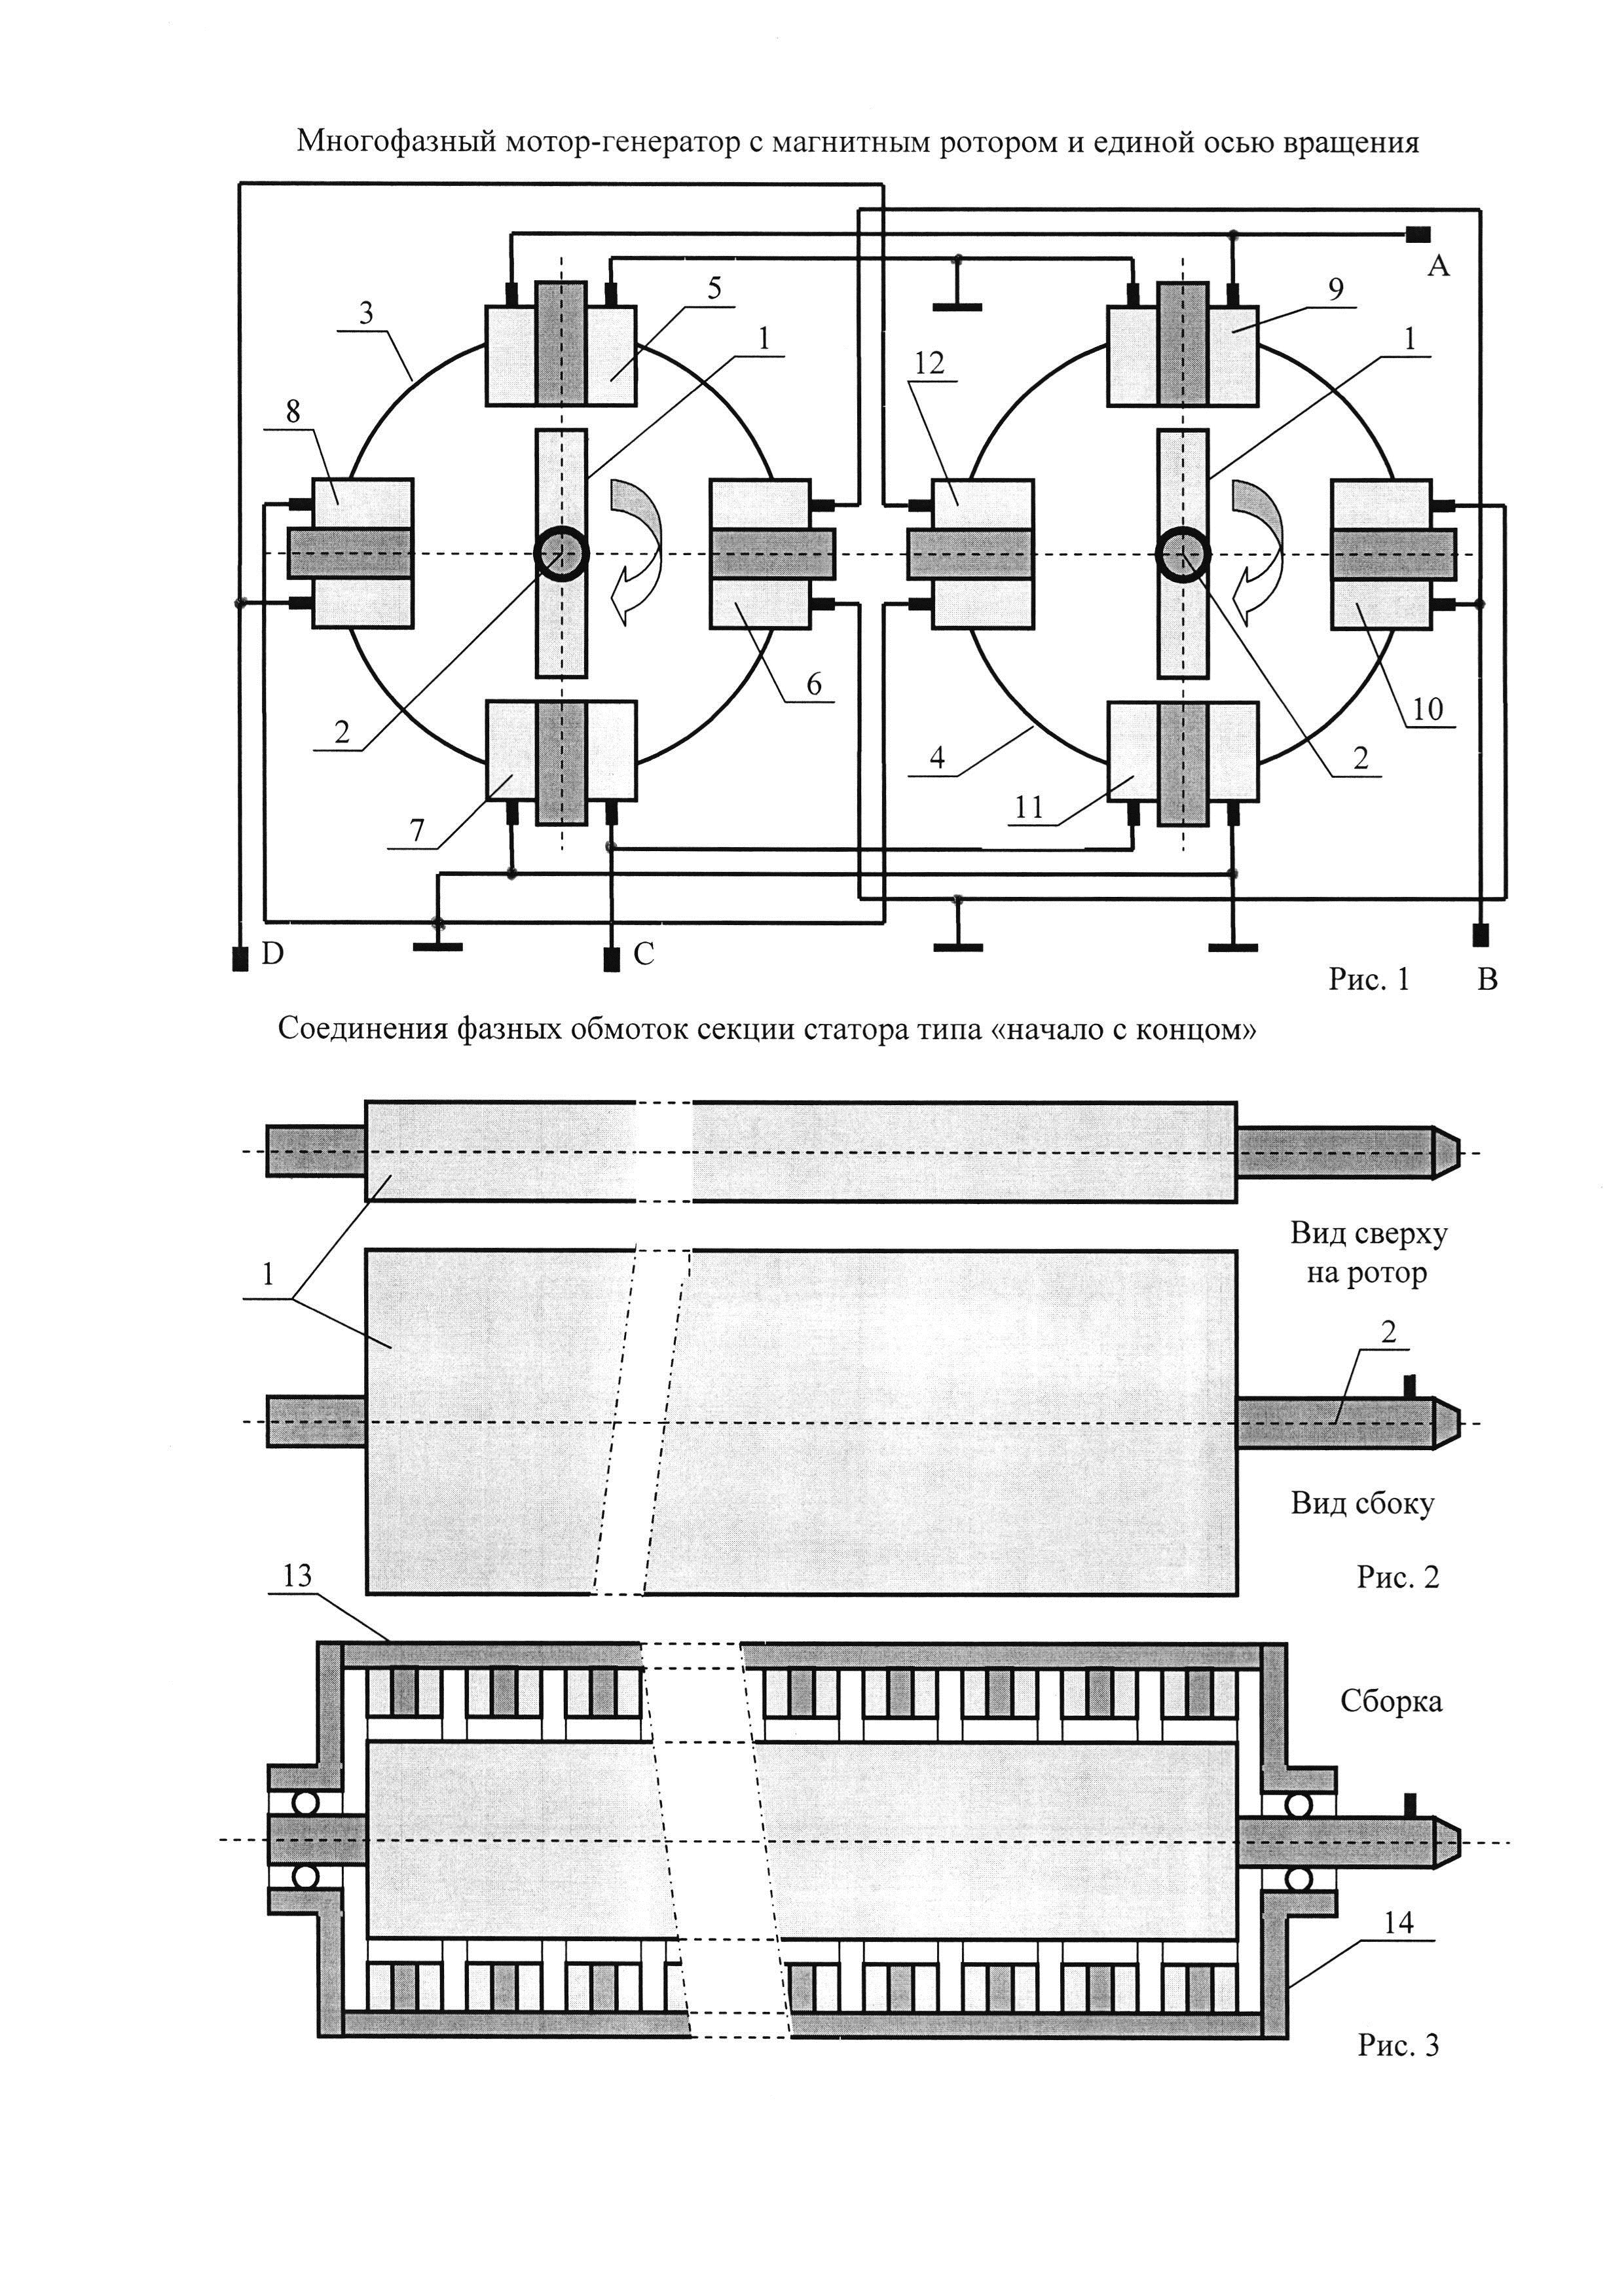 Многофазный мотор-генератор с магнитным ротором